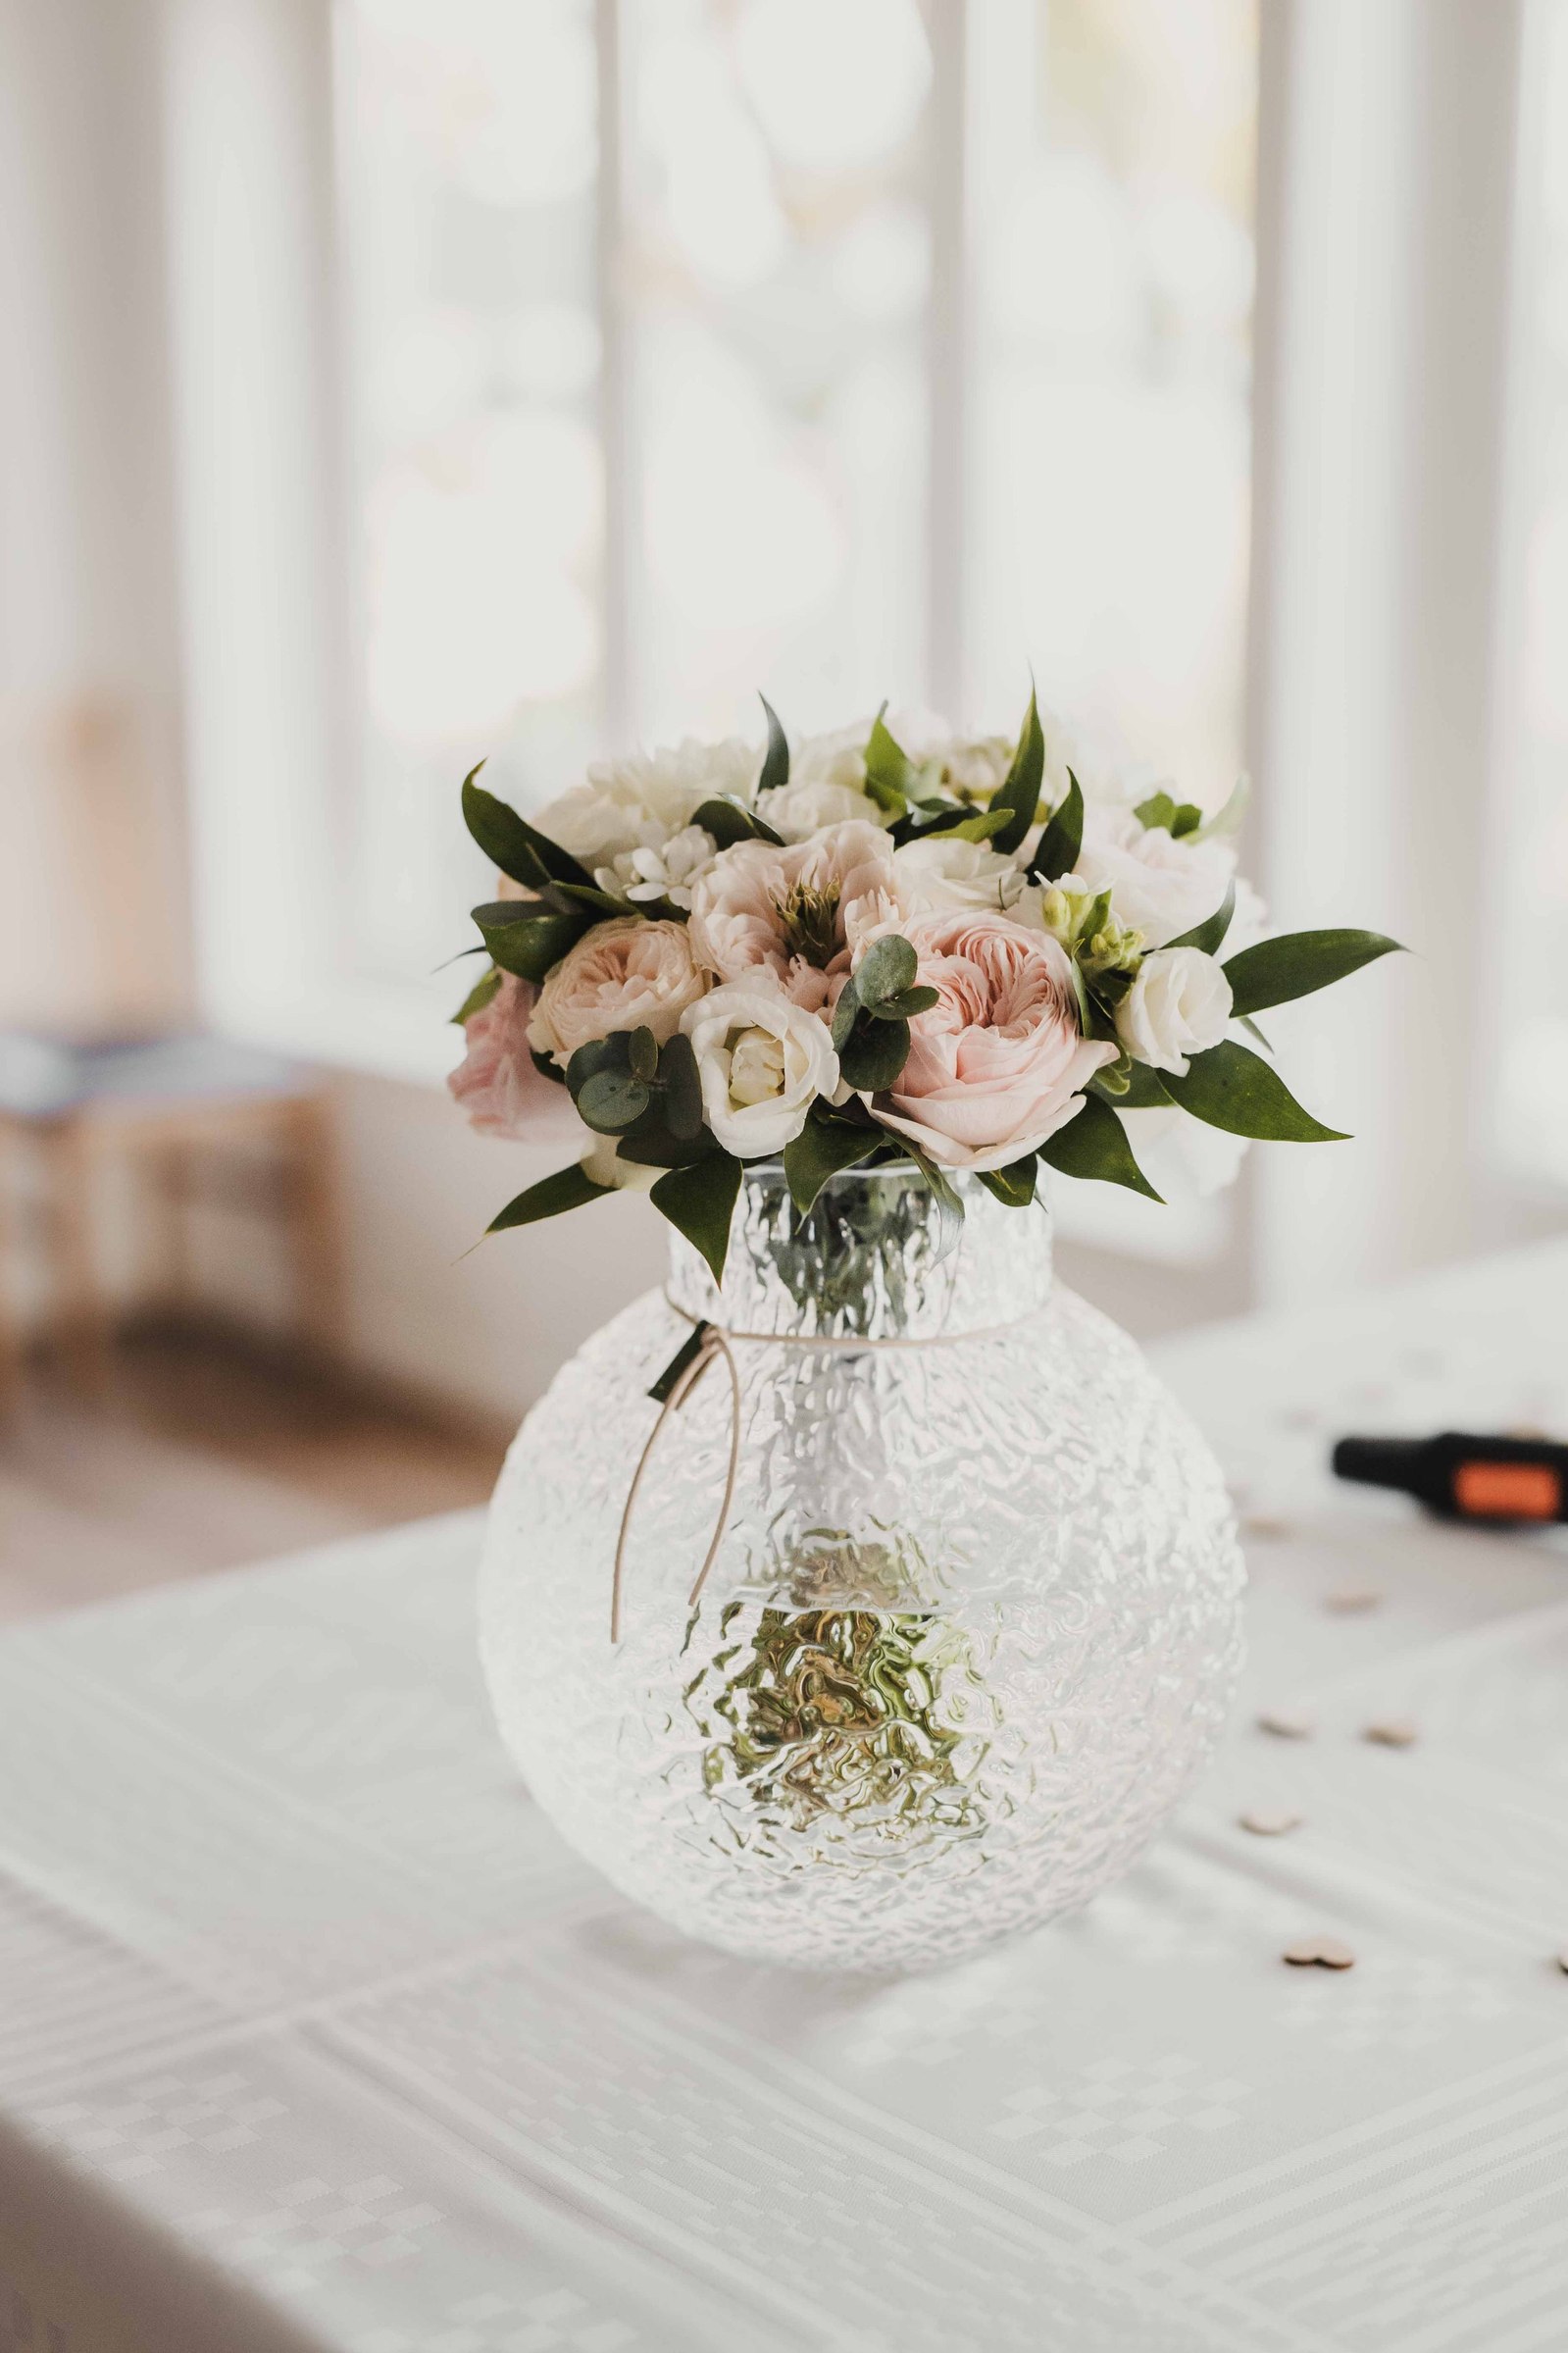 Brudbukett med rosa rosor, vita blommor och gröna blad i rund glasvas placerad på dukat bord med vit duk, i festlokalen på restaurang, i bakgrunden stora fönster med mycket ljusinsläpp.